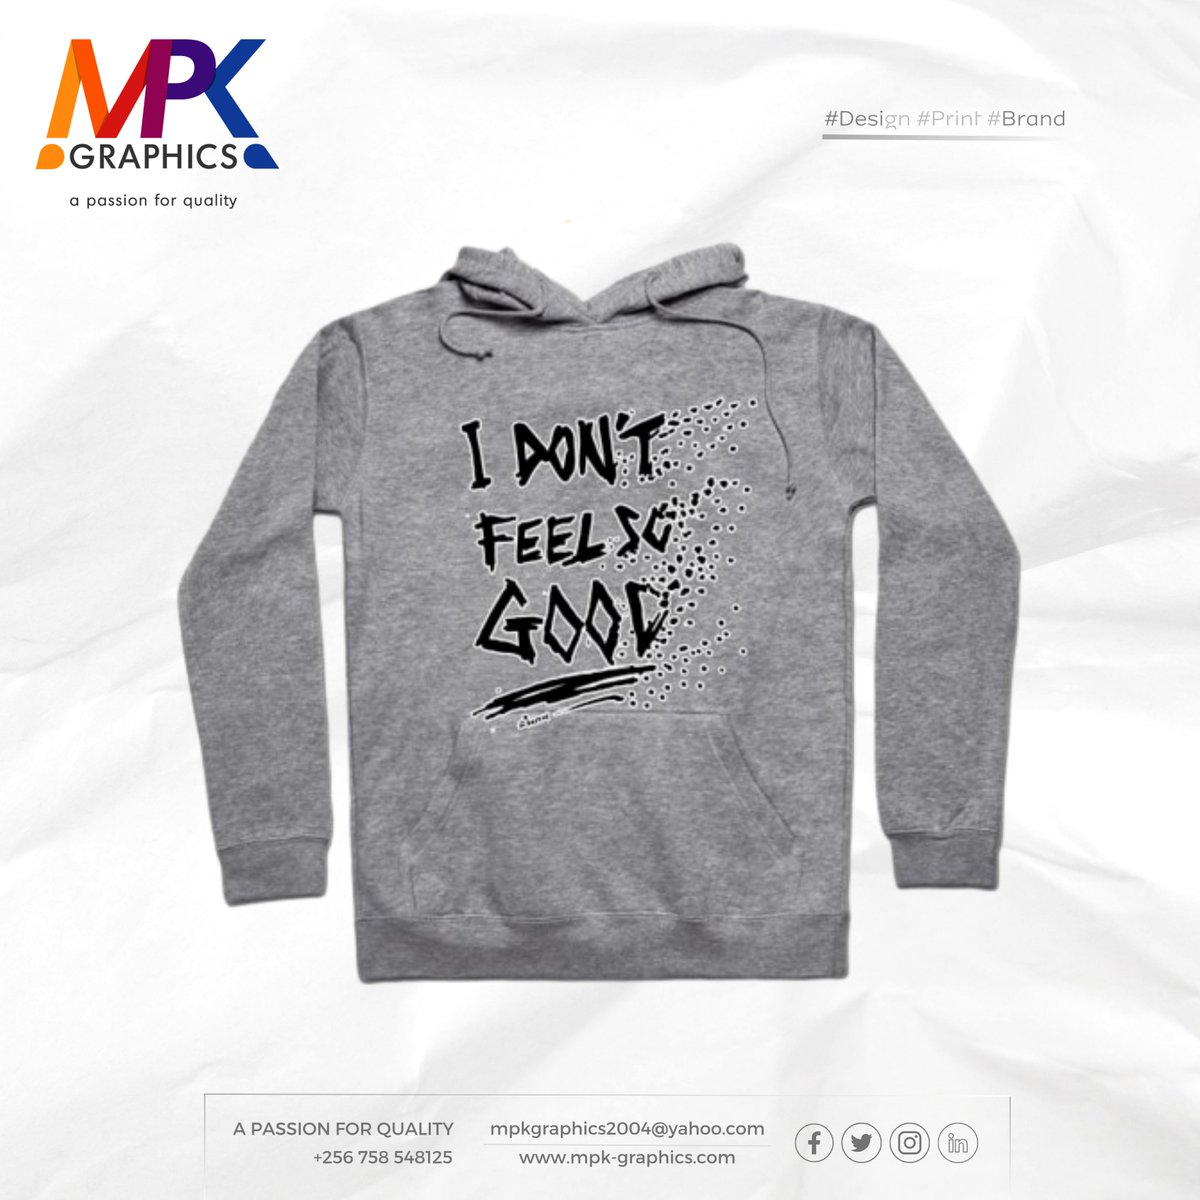 Ka weather mukawuulira? oba we print this for you?👇🏻 #design #print #brand mpk-graphics.com